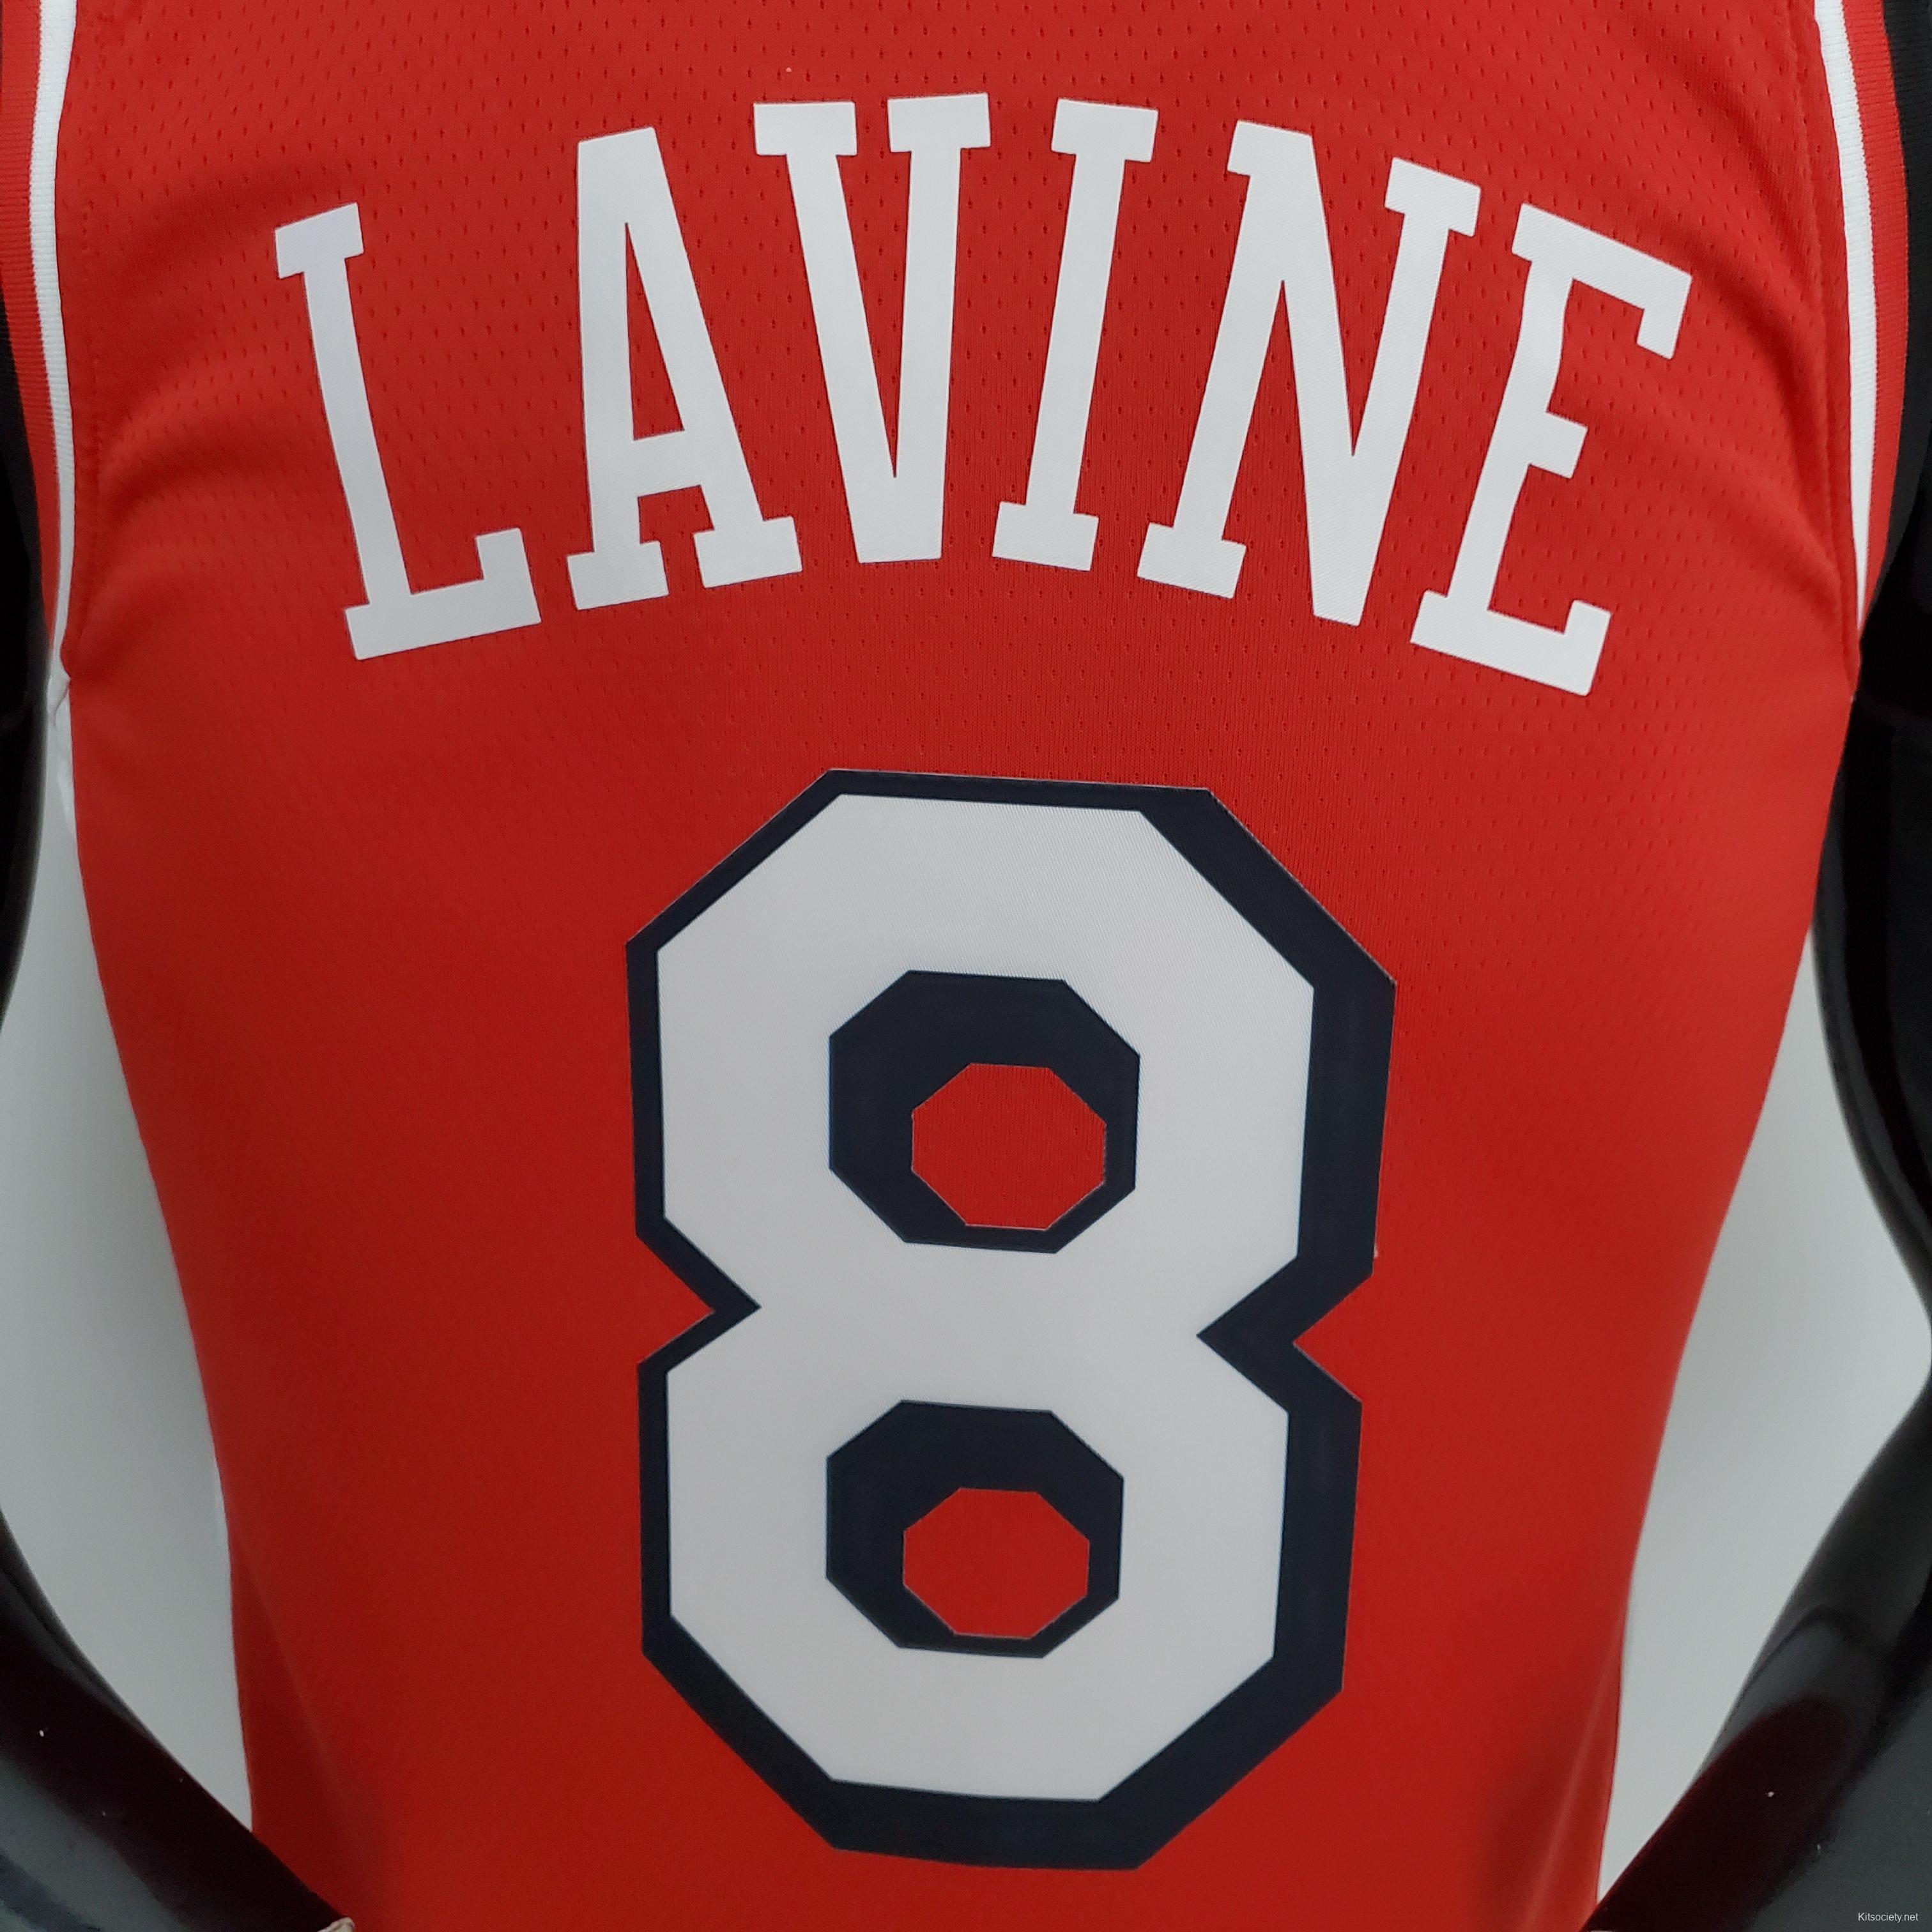 75th Anniversary LaVine#8 Bulls Flyers Black NBA Jersey - Kitsociety